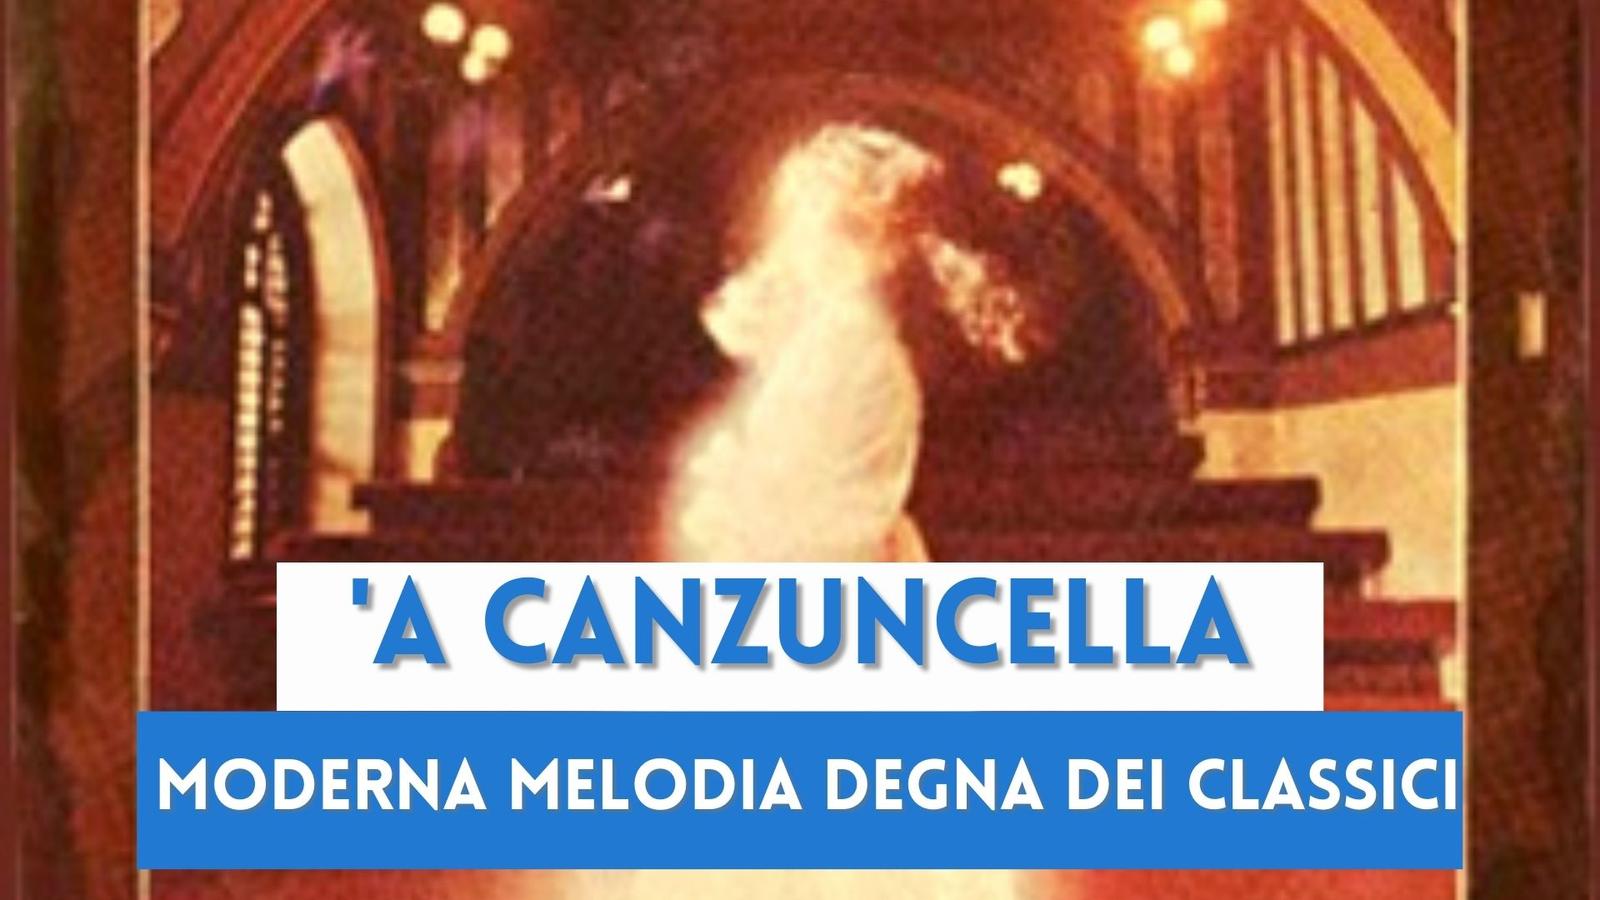 'A Canzuncella